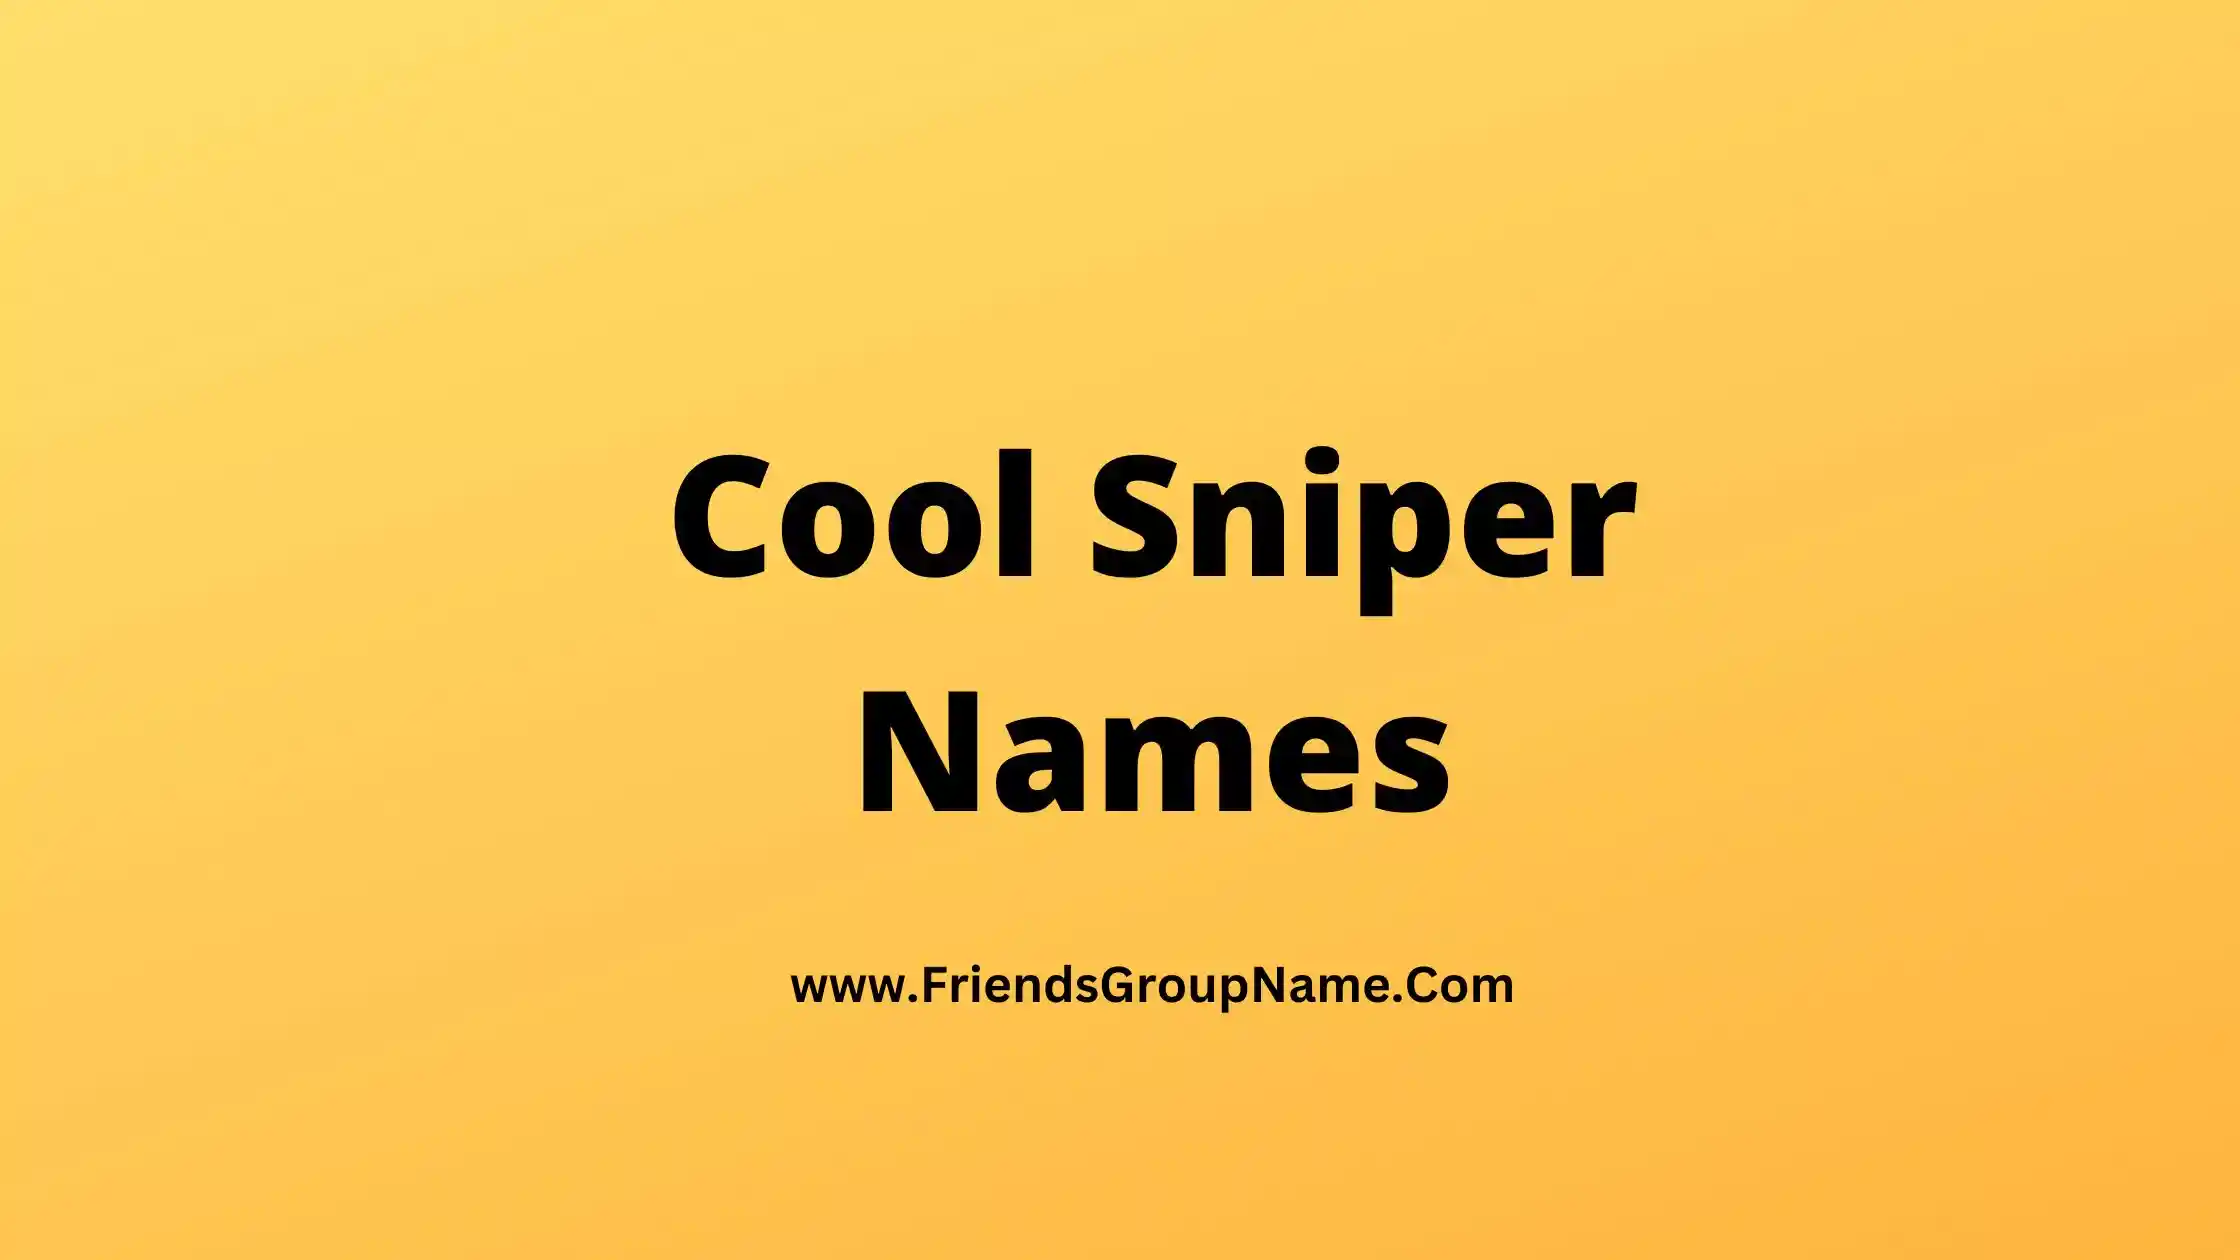 Cool Sniper Names